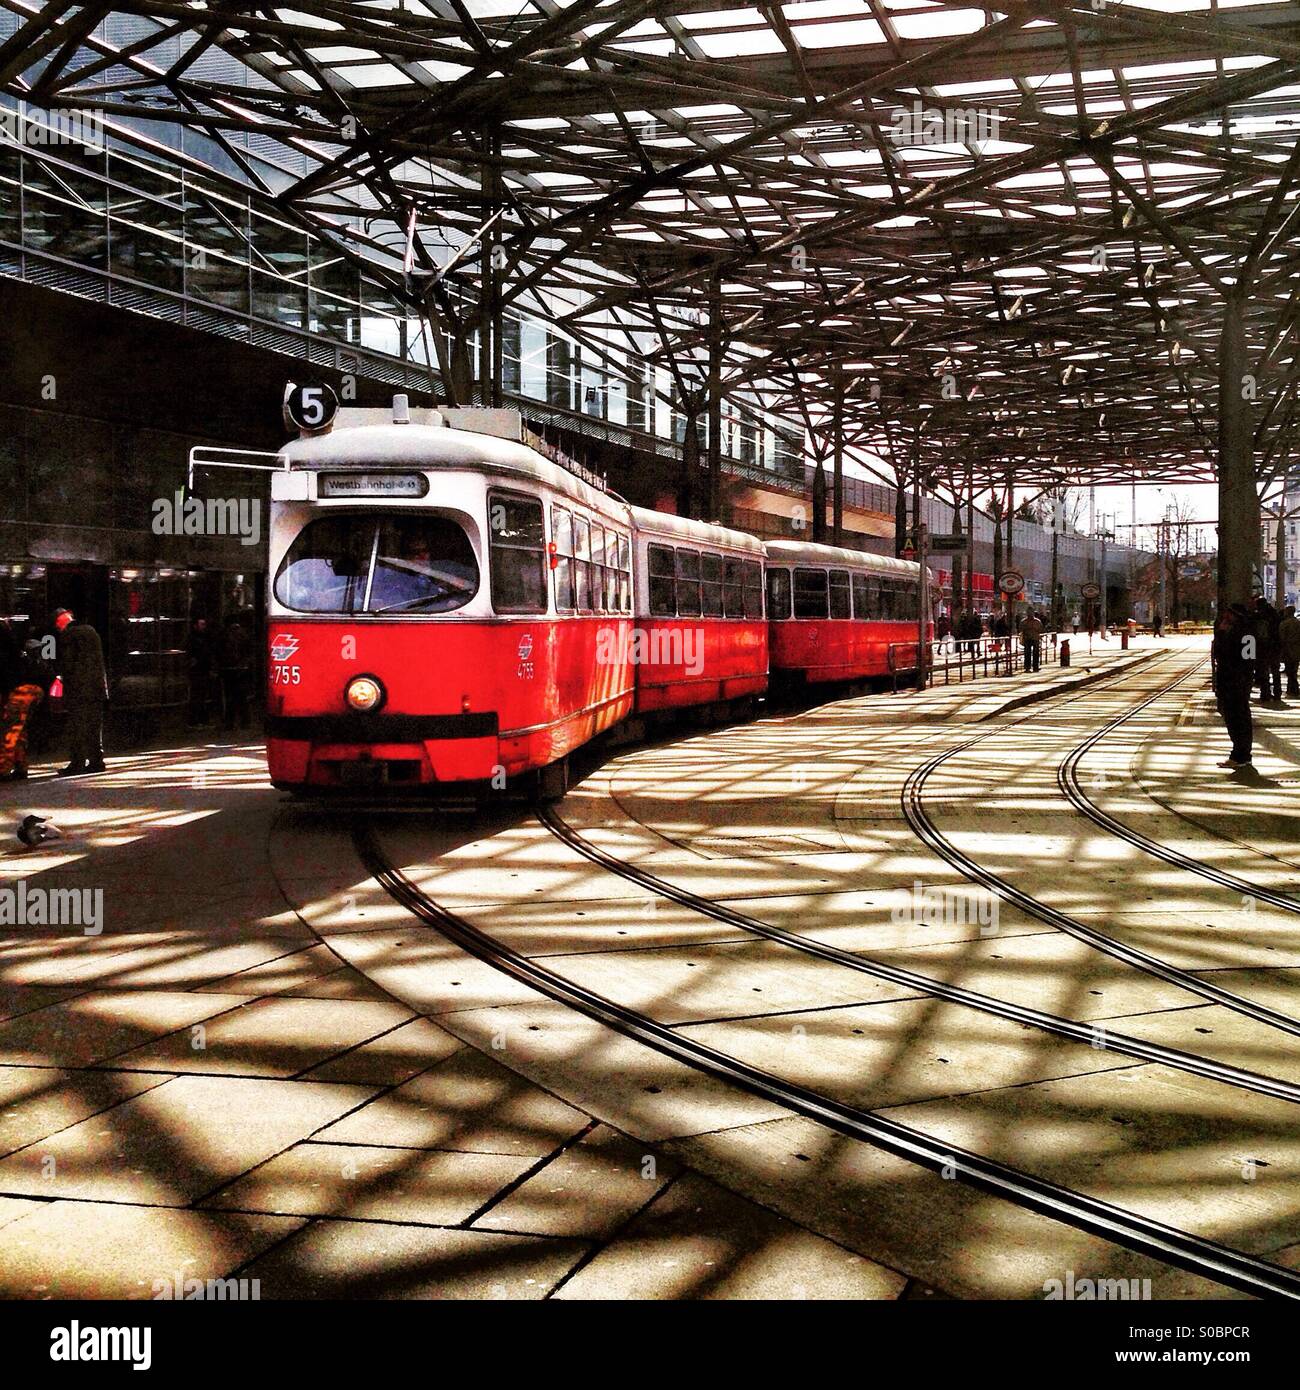 Red tram in Wien Praterstern Foto Stock